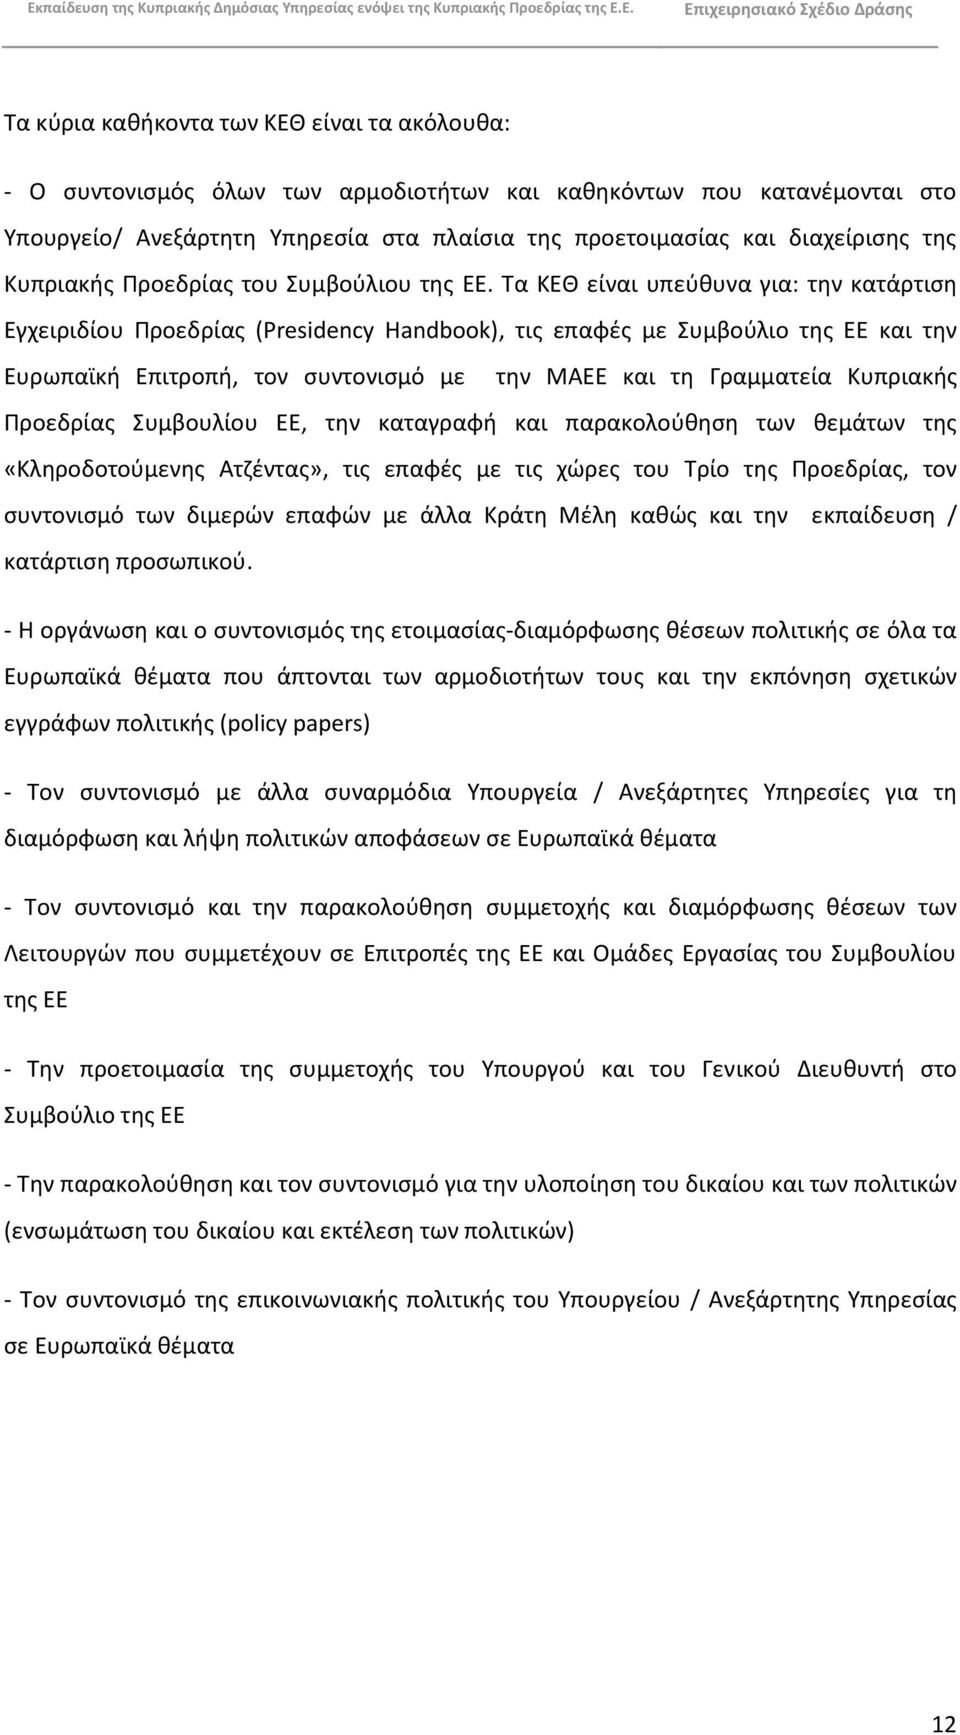 Τα ΚΕΘ είναι υπεφκυνα για: τθν κατάρτιςθ Εγχειριδίου Ρροεδρίασ (Presidency Handbook), τισ επαφζσ με Συμβοφλιο τθσ ΕΕ και τθν Ευρωπαϊκι Επιτροπι, τον ςυντονιςμό με τθν ΜΑΕΕ και τθ Γραμματεία Κυπριακισ